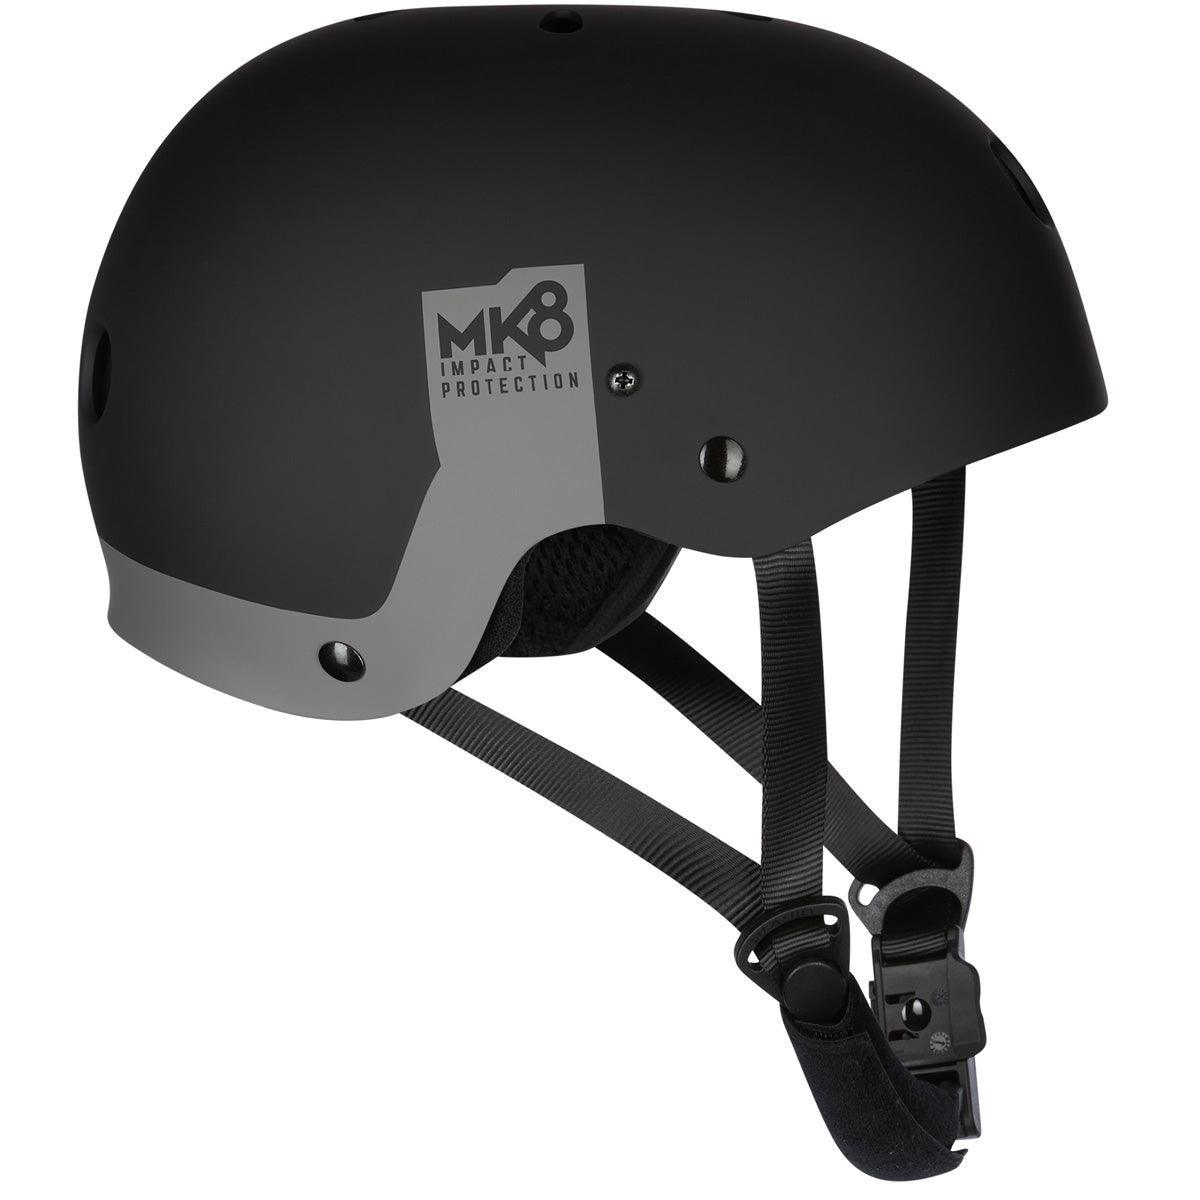 Mystic MK8-X Helmet - Powerkiteshop